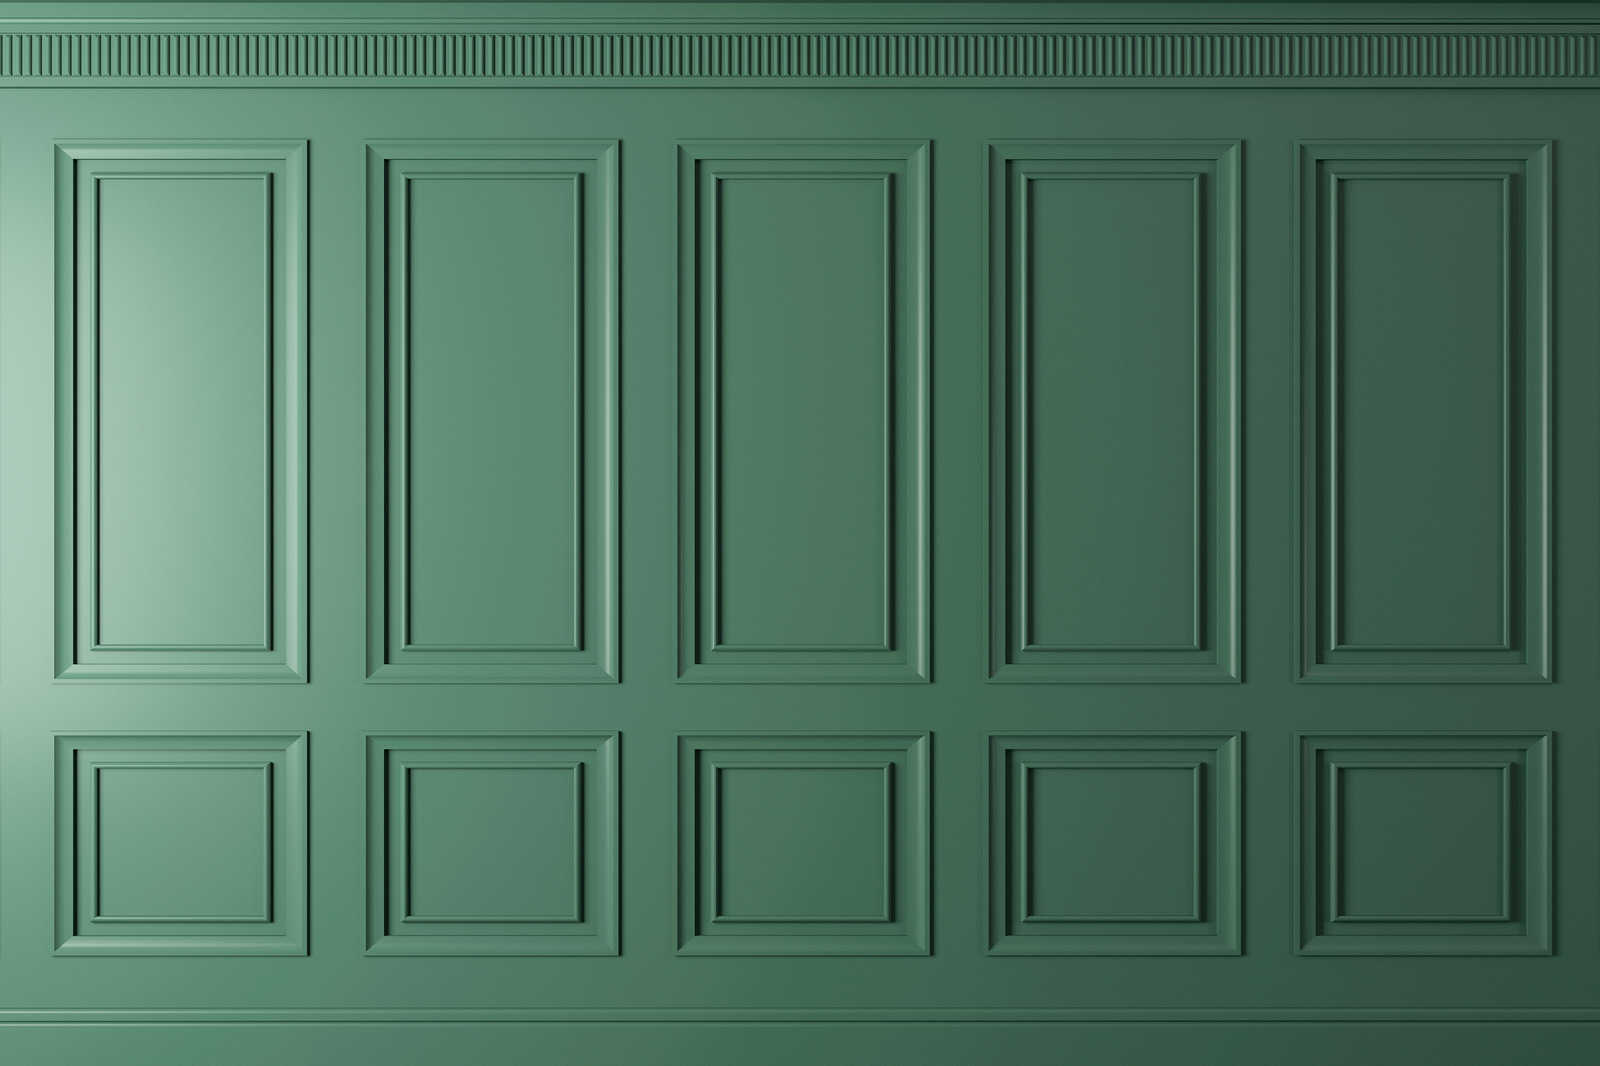             Kensington 1 - 3D Leinwandbild Holzvertäfelung Tannengrün – 1,20 m x 0,80 m
        